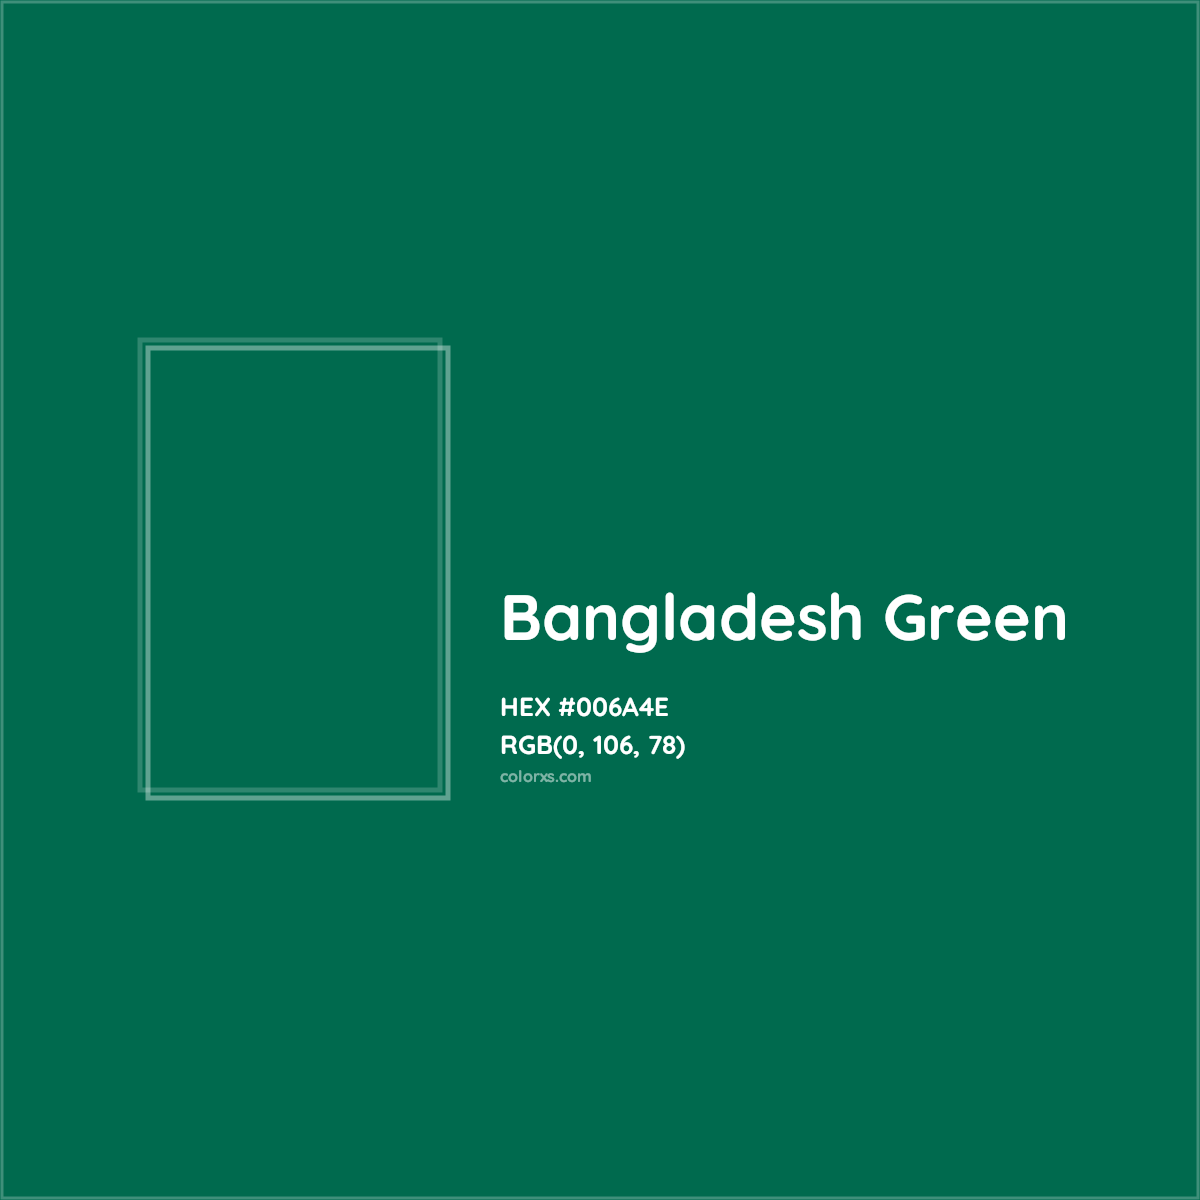 HEX #006A4E Bangladesh Green Other - Color Code